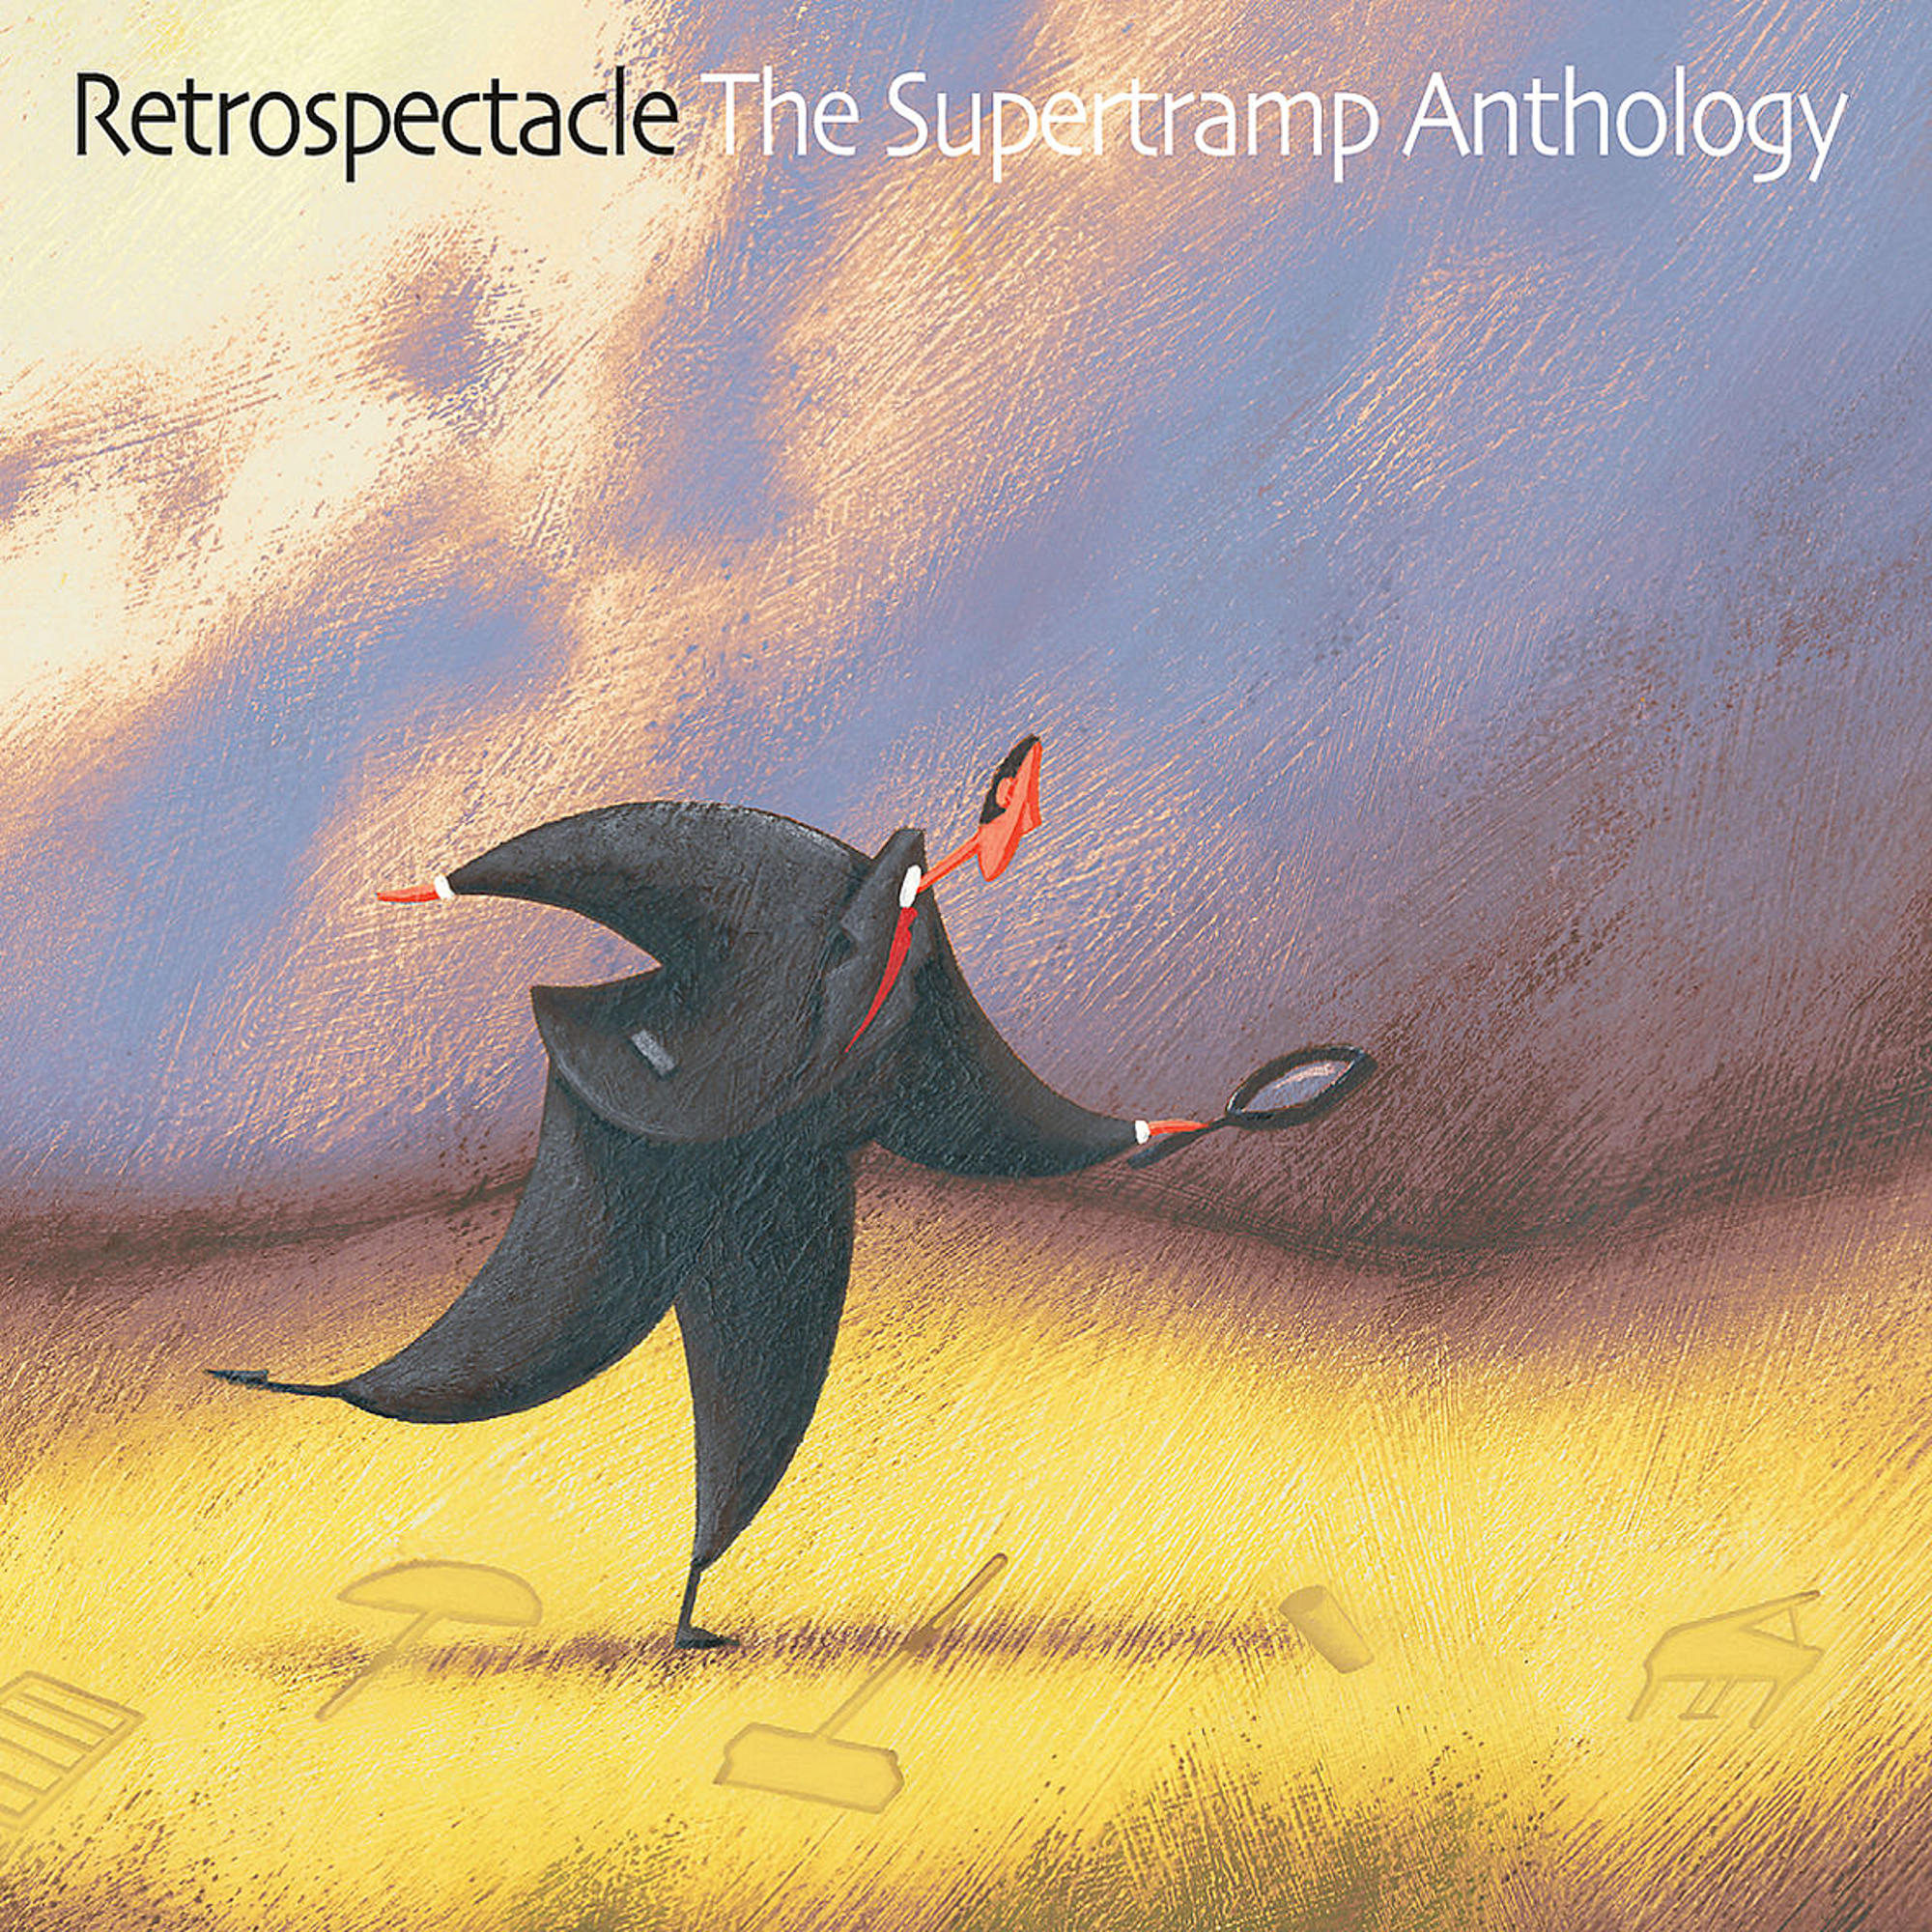 Supertramp - The - (CD) Anthology Supertramp - Retrospectacle